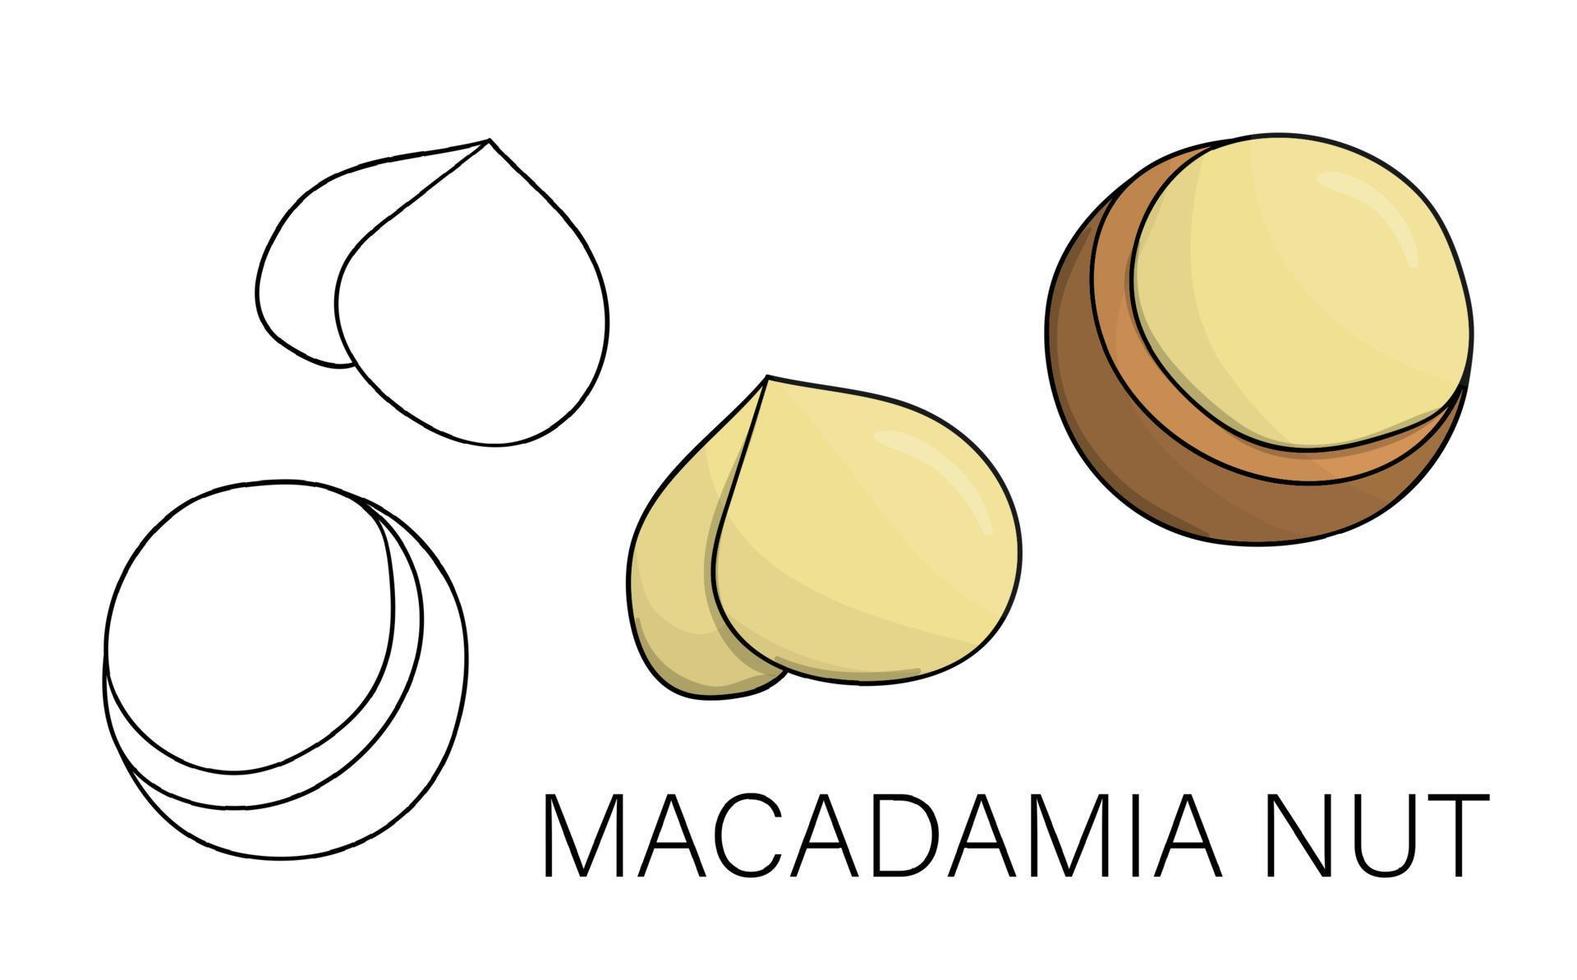 vettore icona macadamia in bianco e nero e colorato. set di noci isolate. illustrazione di cibo in stile cartone animato o scarabocchio isolato su priorità bassa bianca.